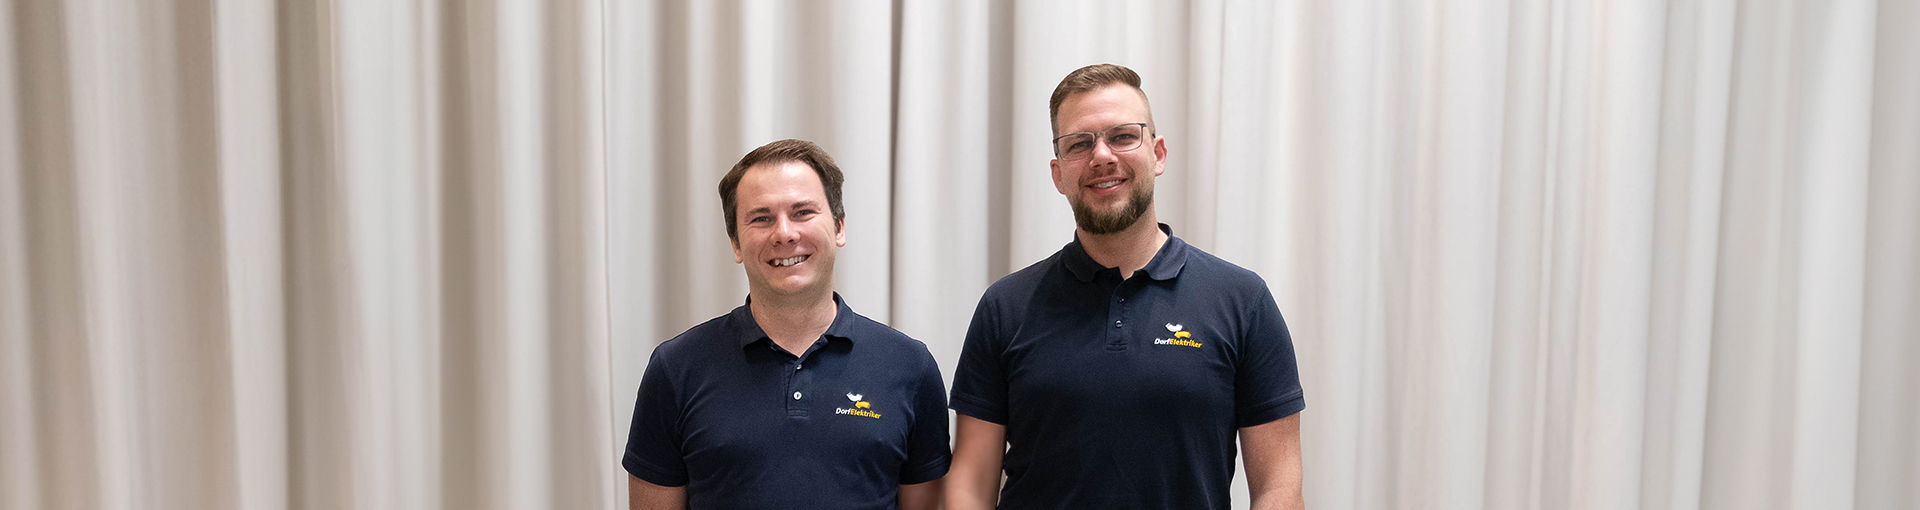 Team Innovation und Bildung, Tobias Juen und Roderich Sandri